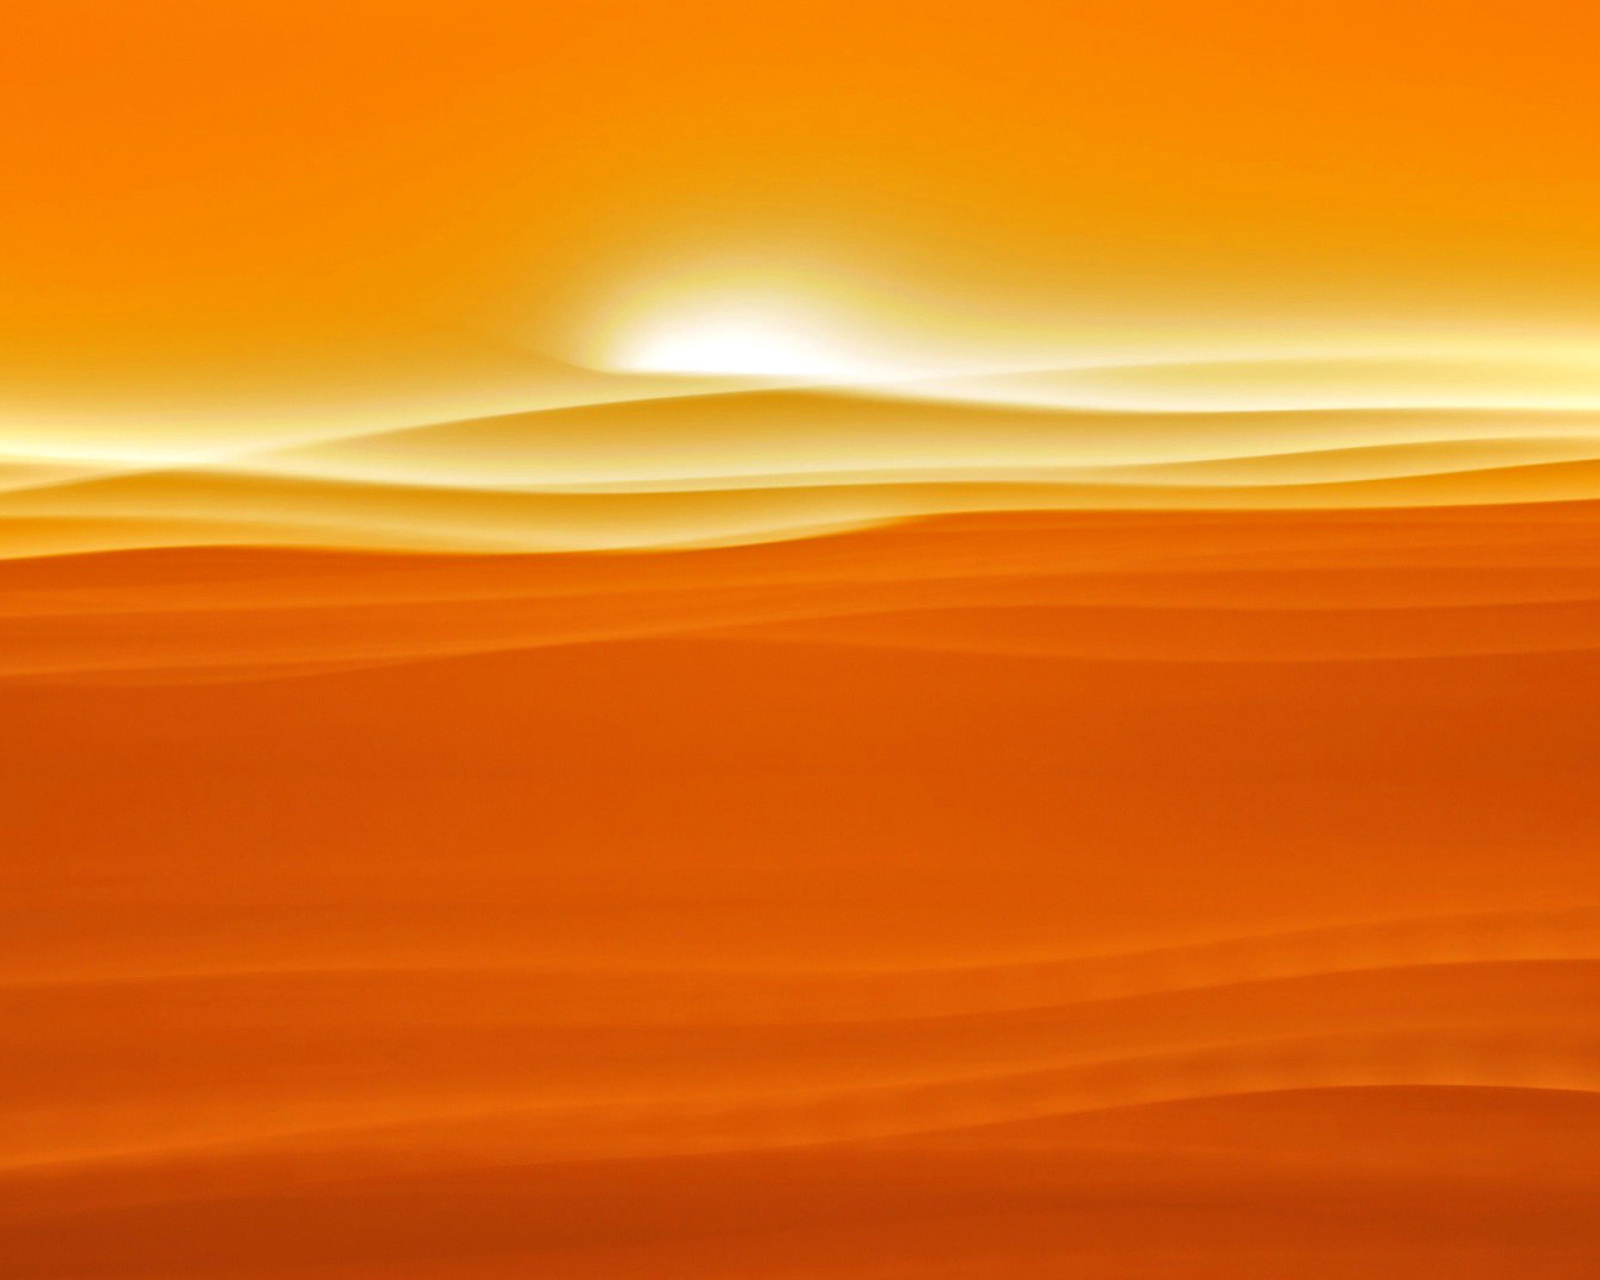 Обои Orange Sky and Desert 1600x1280